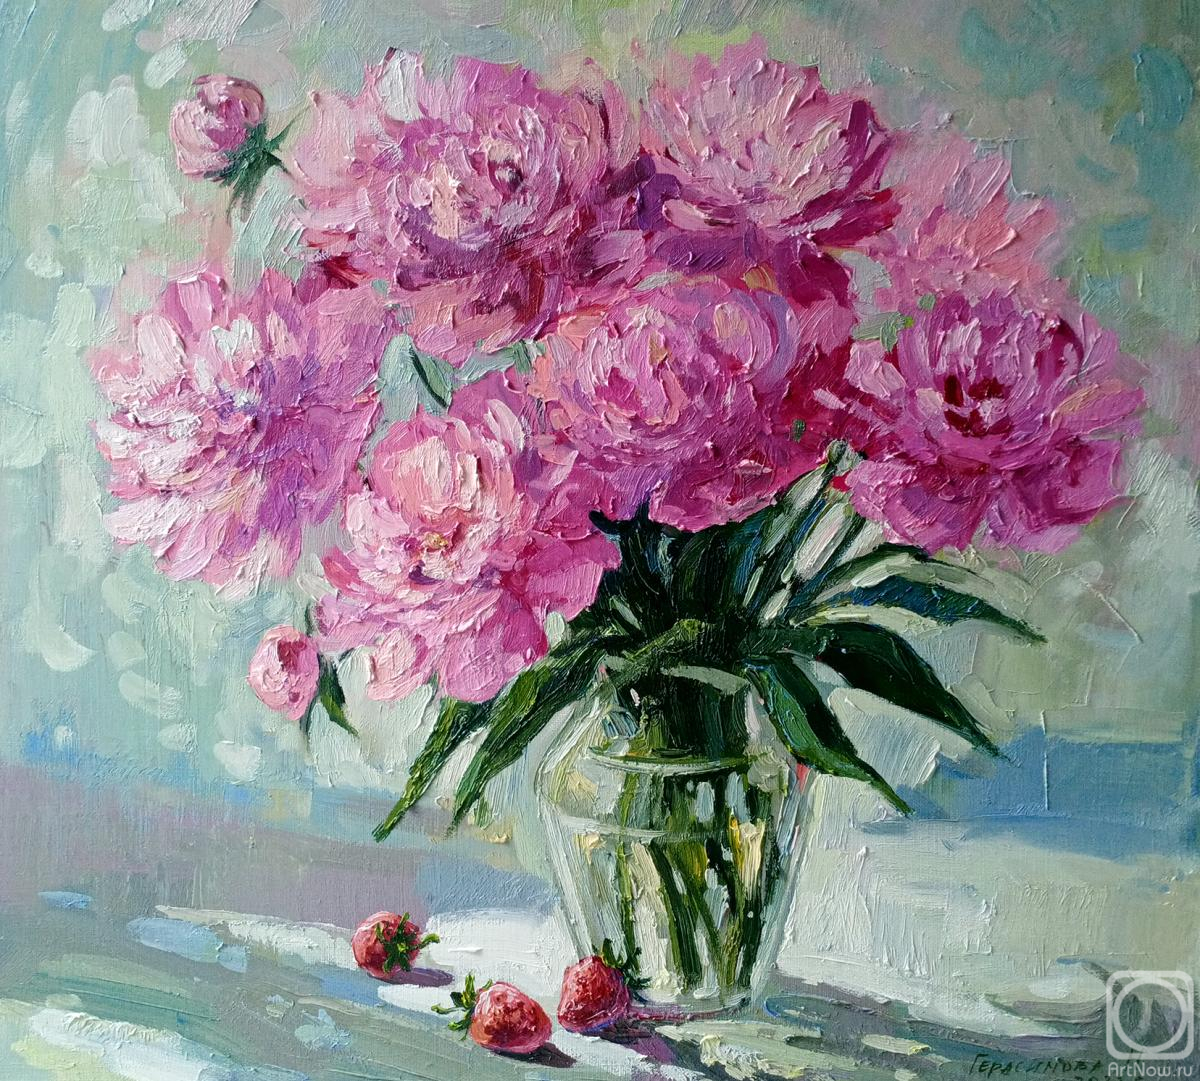 Gerasimova Natalia. Bouquet of peonies